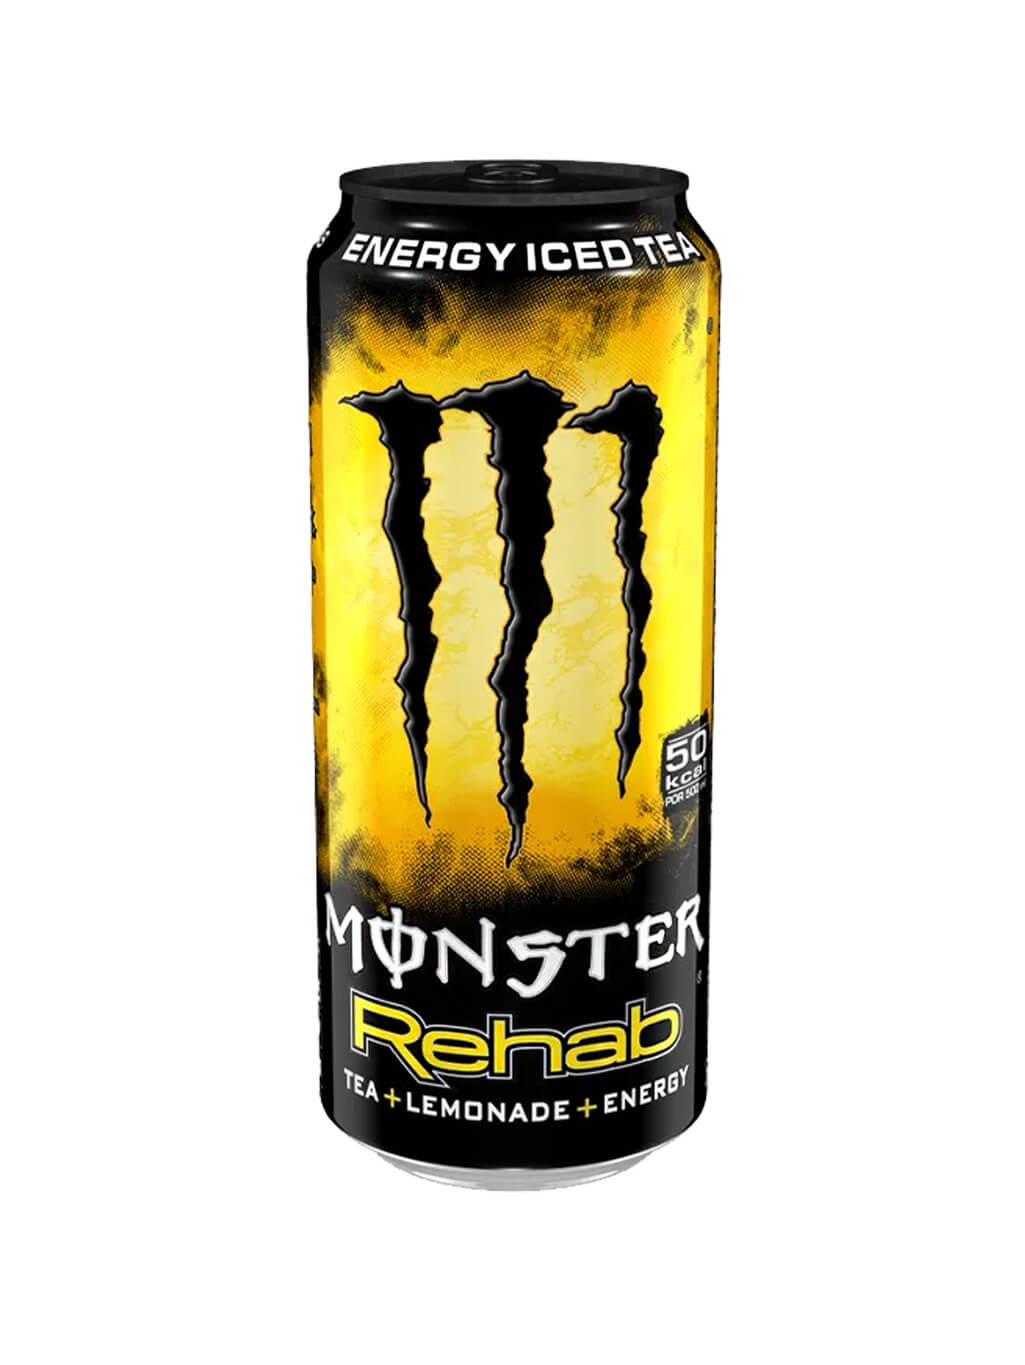 картинка Black Monster Energy Rehab Tea Lemonade Черный монстр энергетический напиток Чай лимонад банка 500 мл